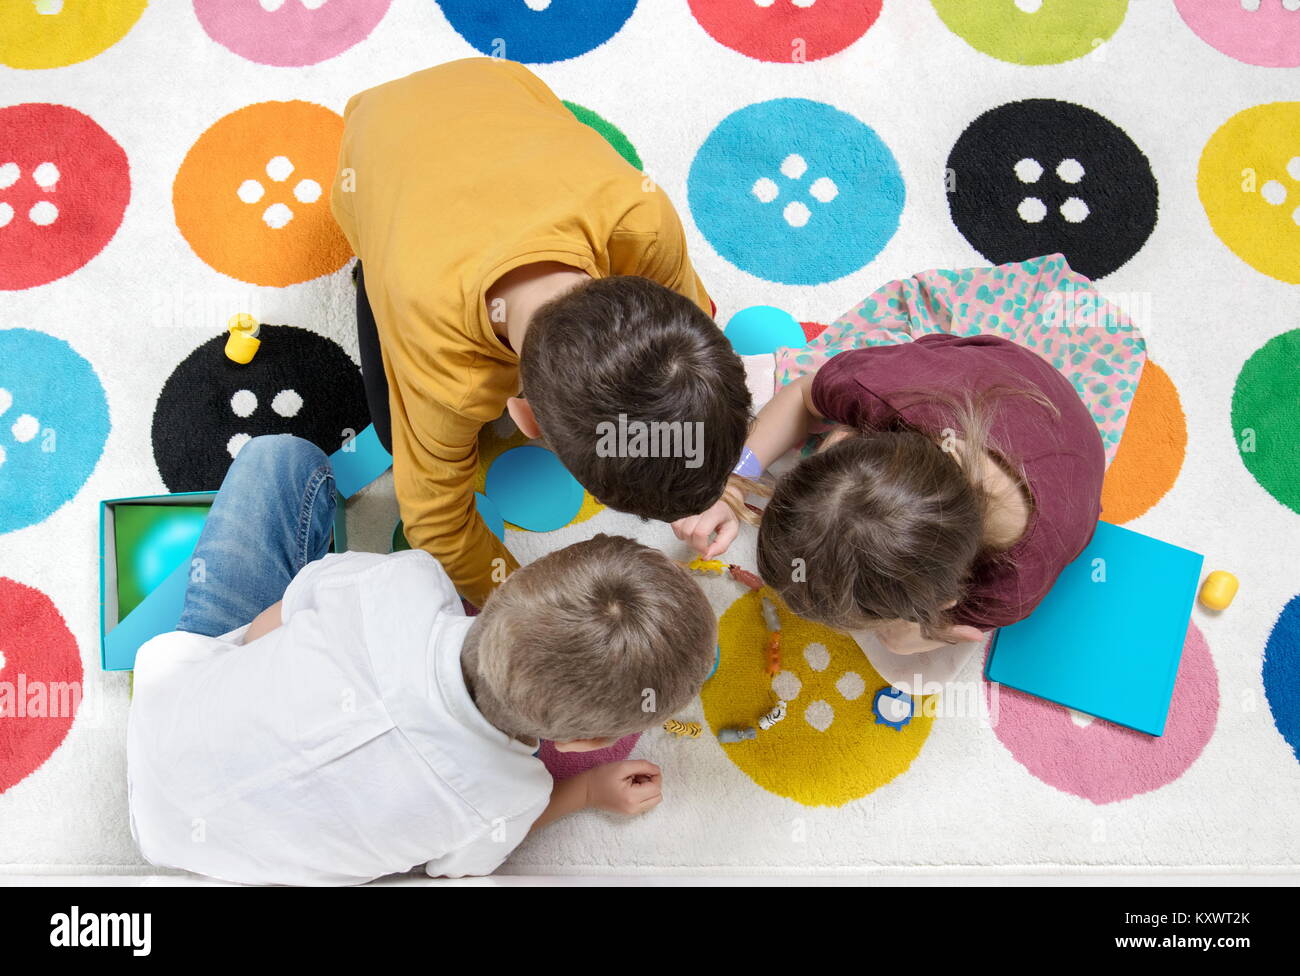 Kinder spielen zusammen mit einem Spiel auf dem Teppich und gemeinsam Spaß haben Stockfoto